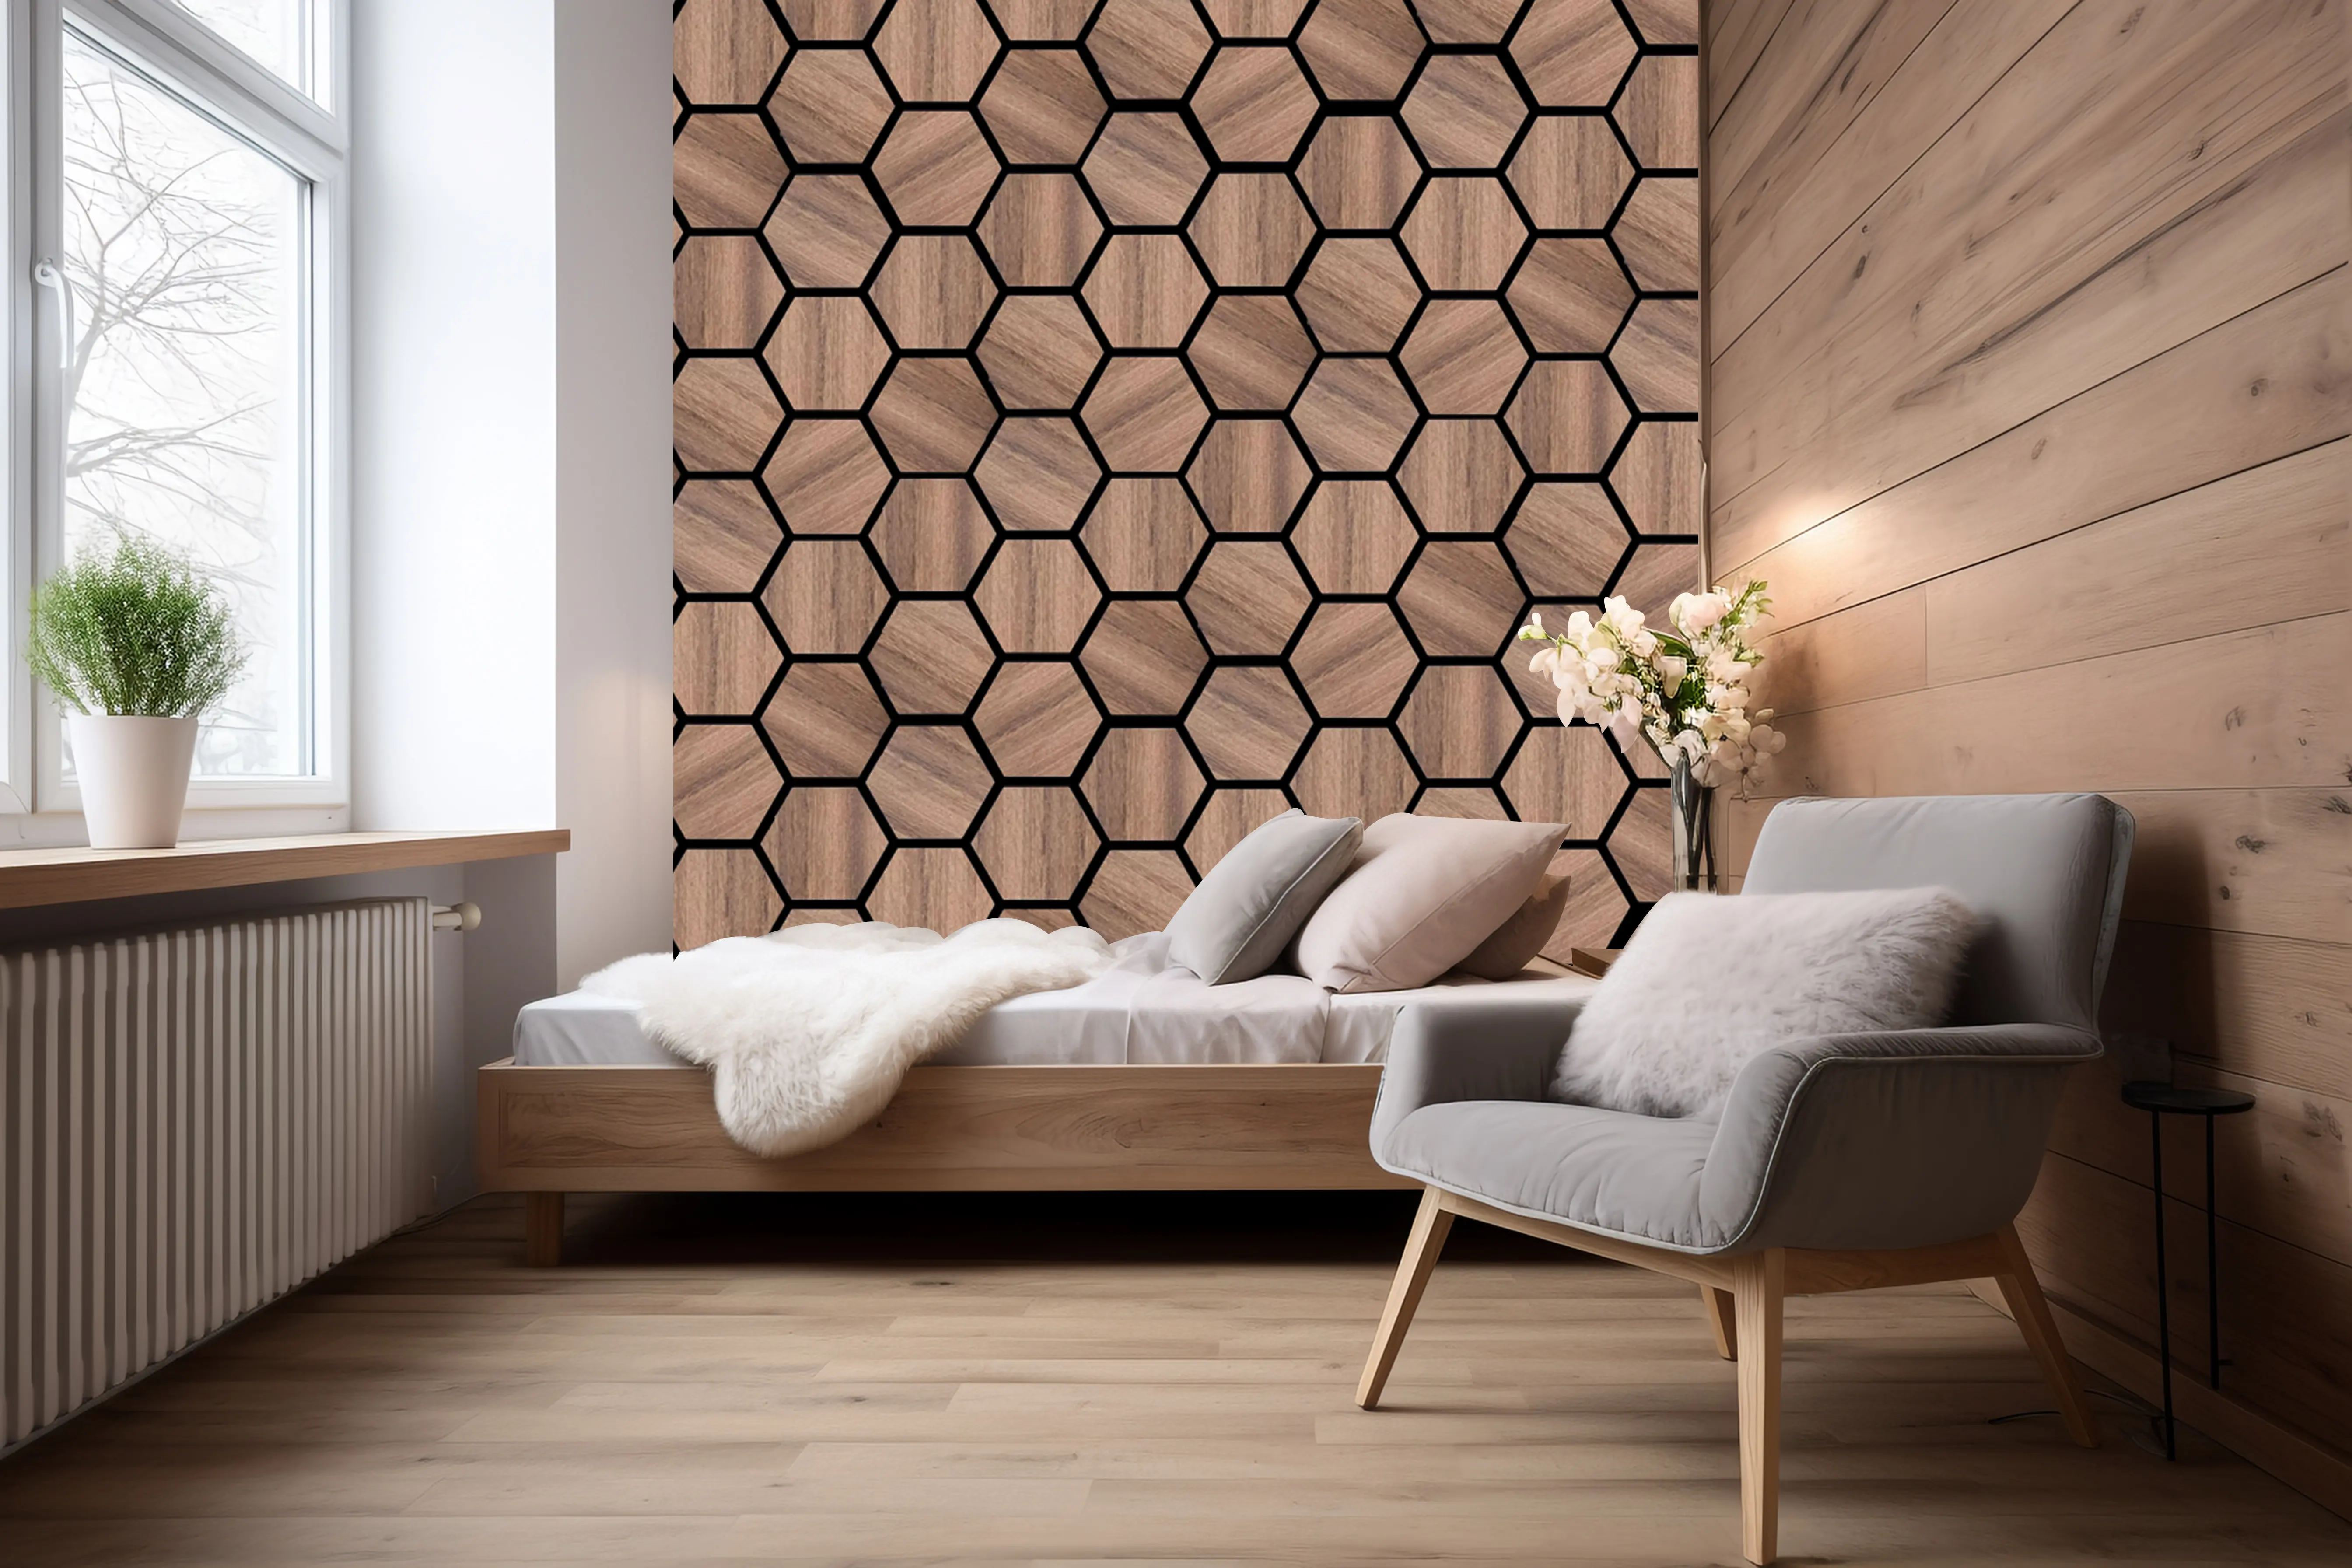 FEYT Luxe Hexagonal Nouveau Style Mur Décoratif Bois Placage Surface Meubles De Bureau Panneaux Acoustiques